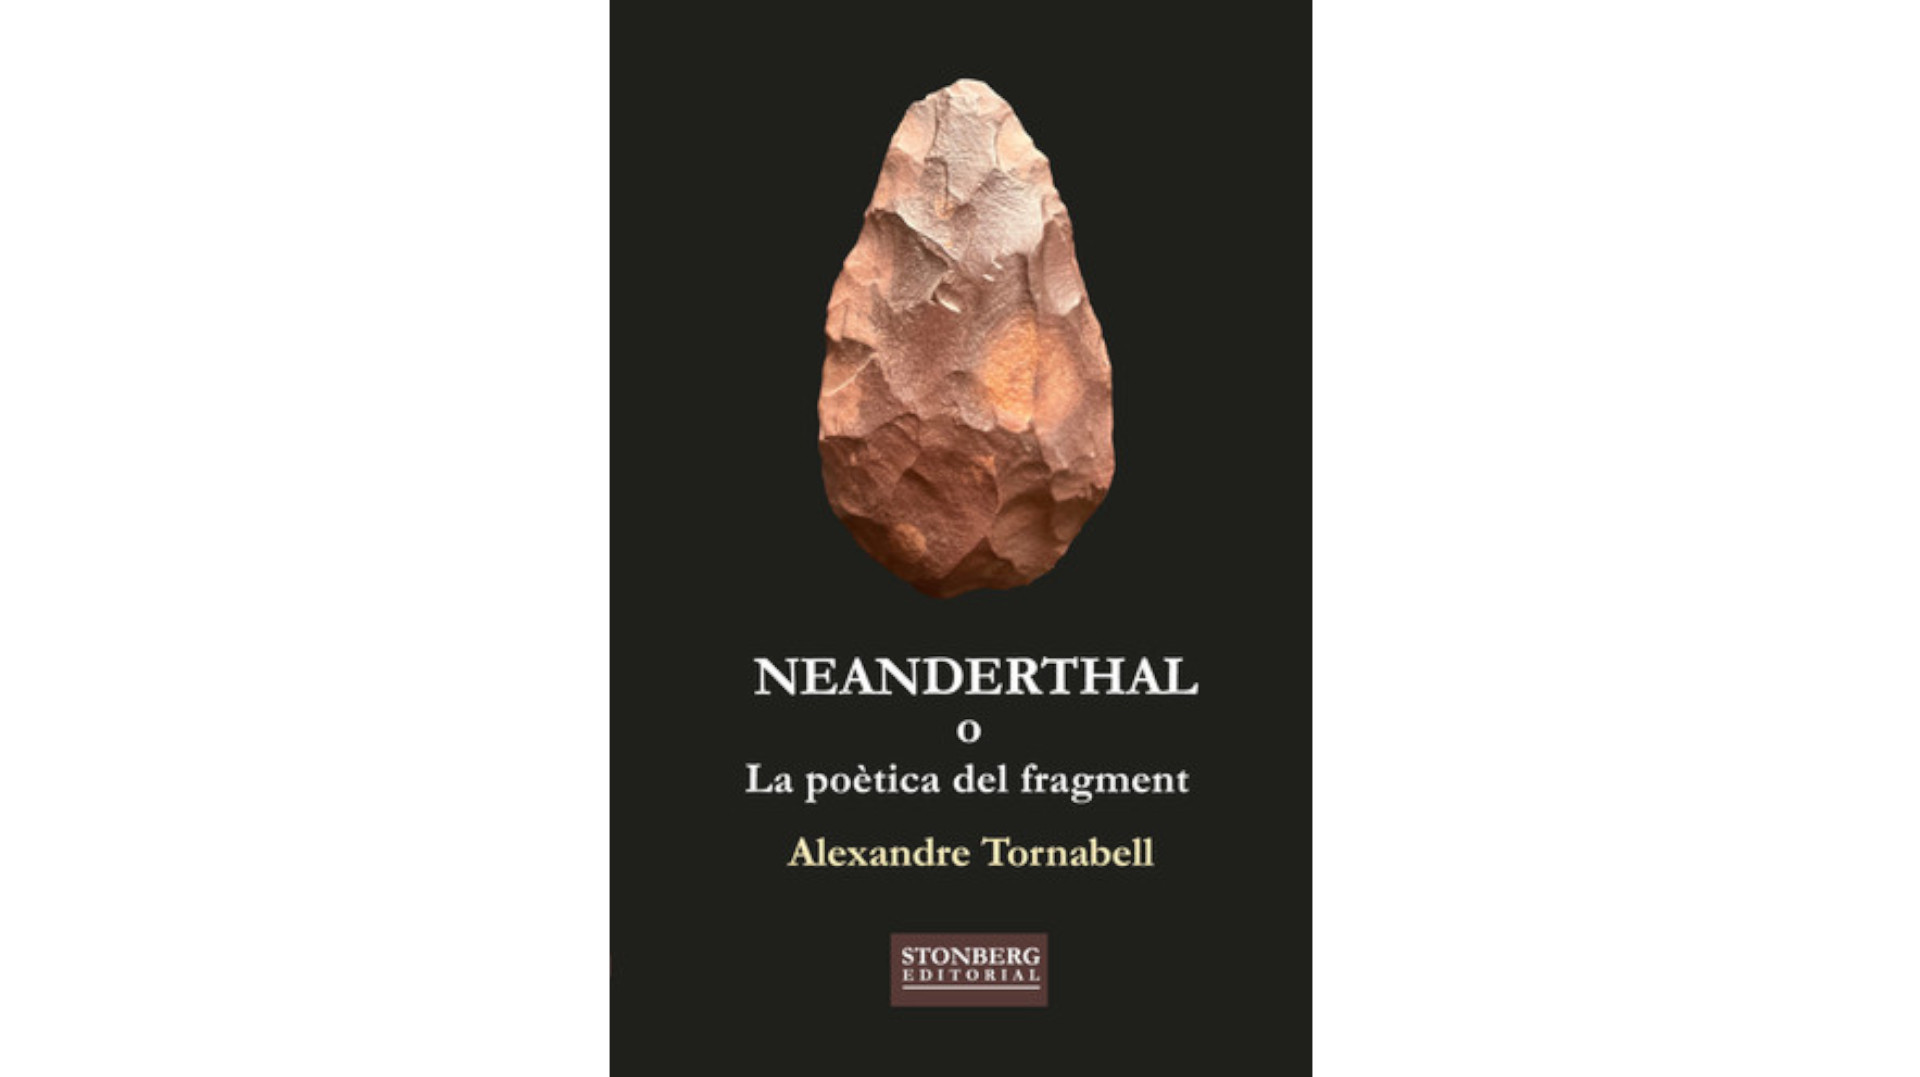 Presentació del llibre “Neanderthal”